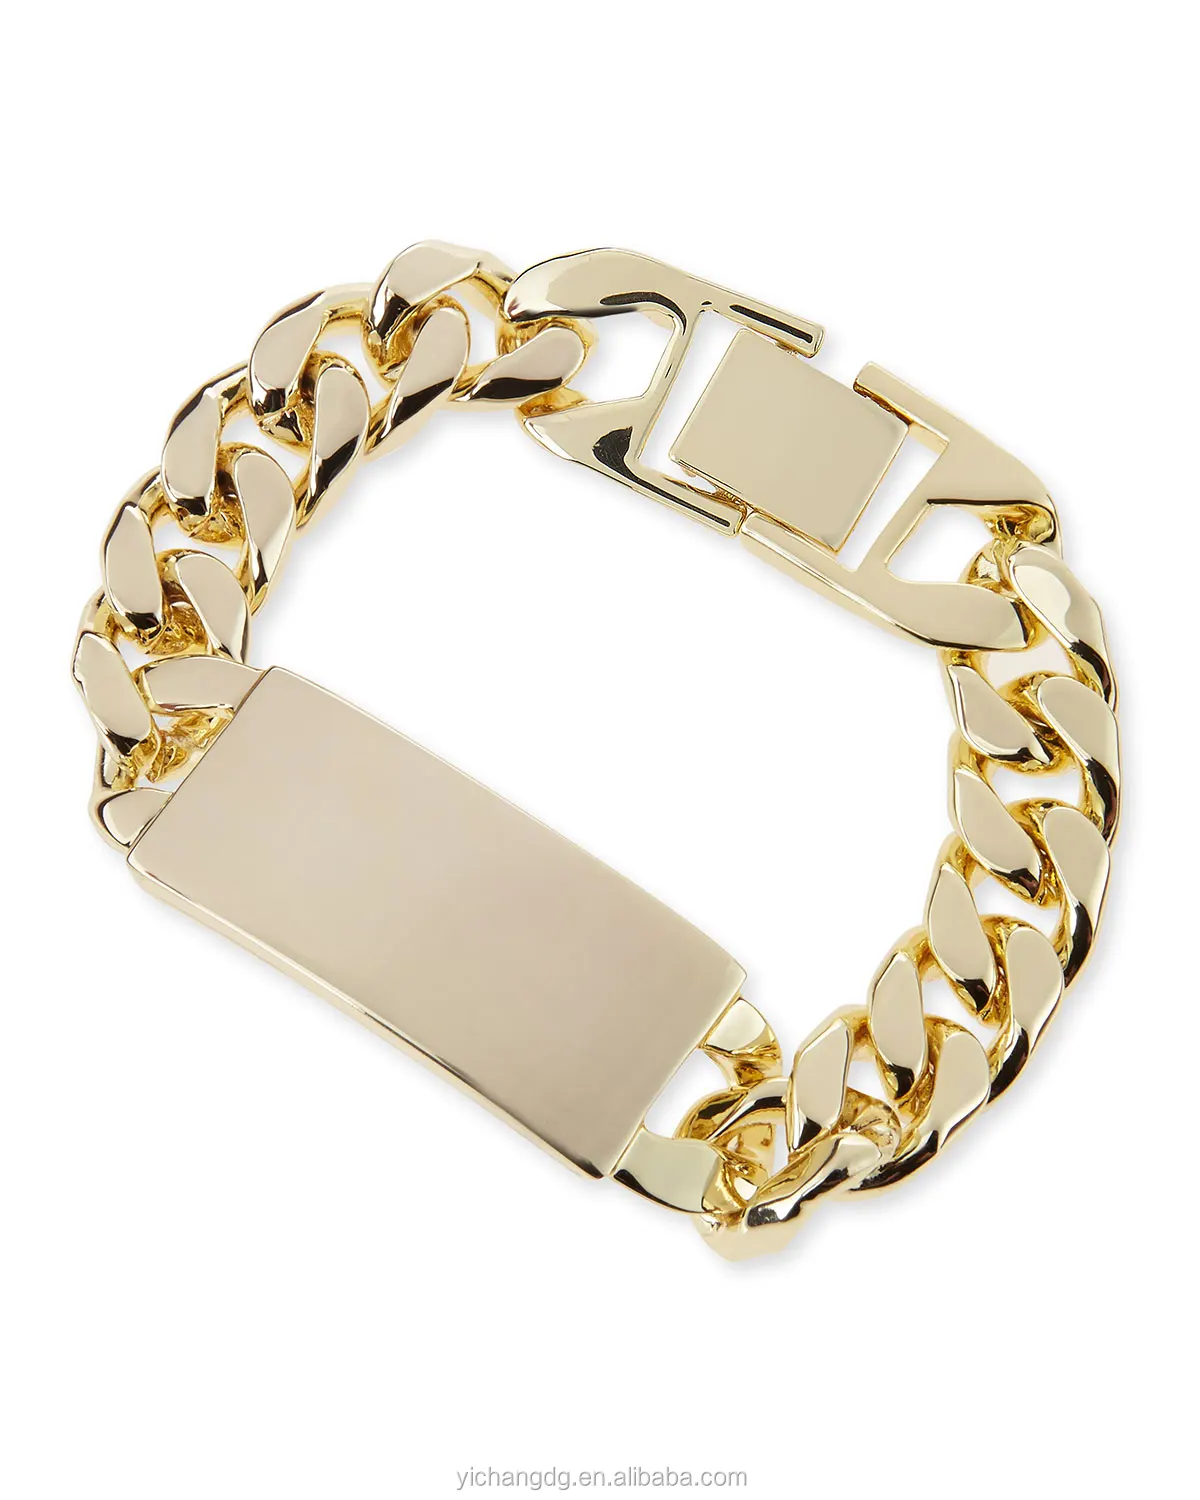 14k Gold Filled Bracelet Manufacturer - Buy Gold Filled Bracelet ...